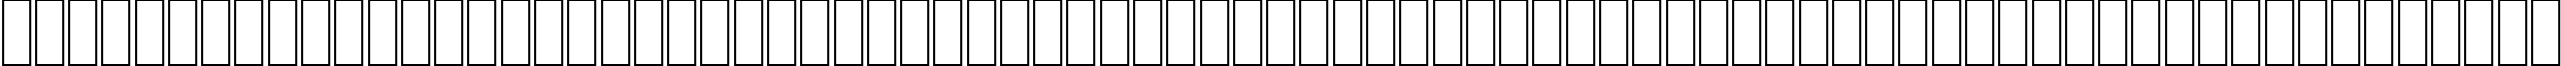 Пример написания английского алфавита шрифтом AGA Dimnah Regular